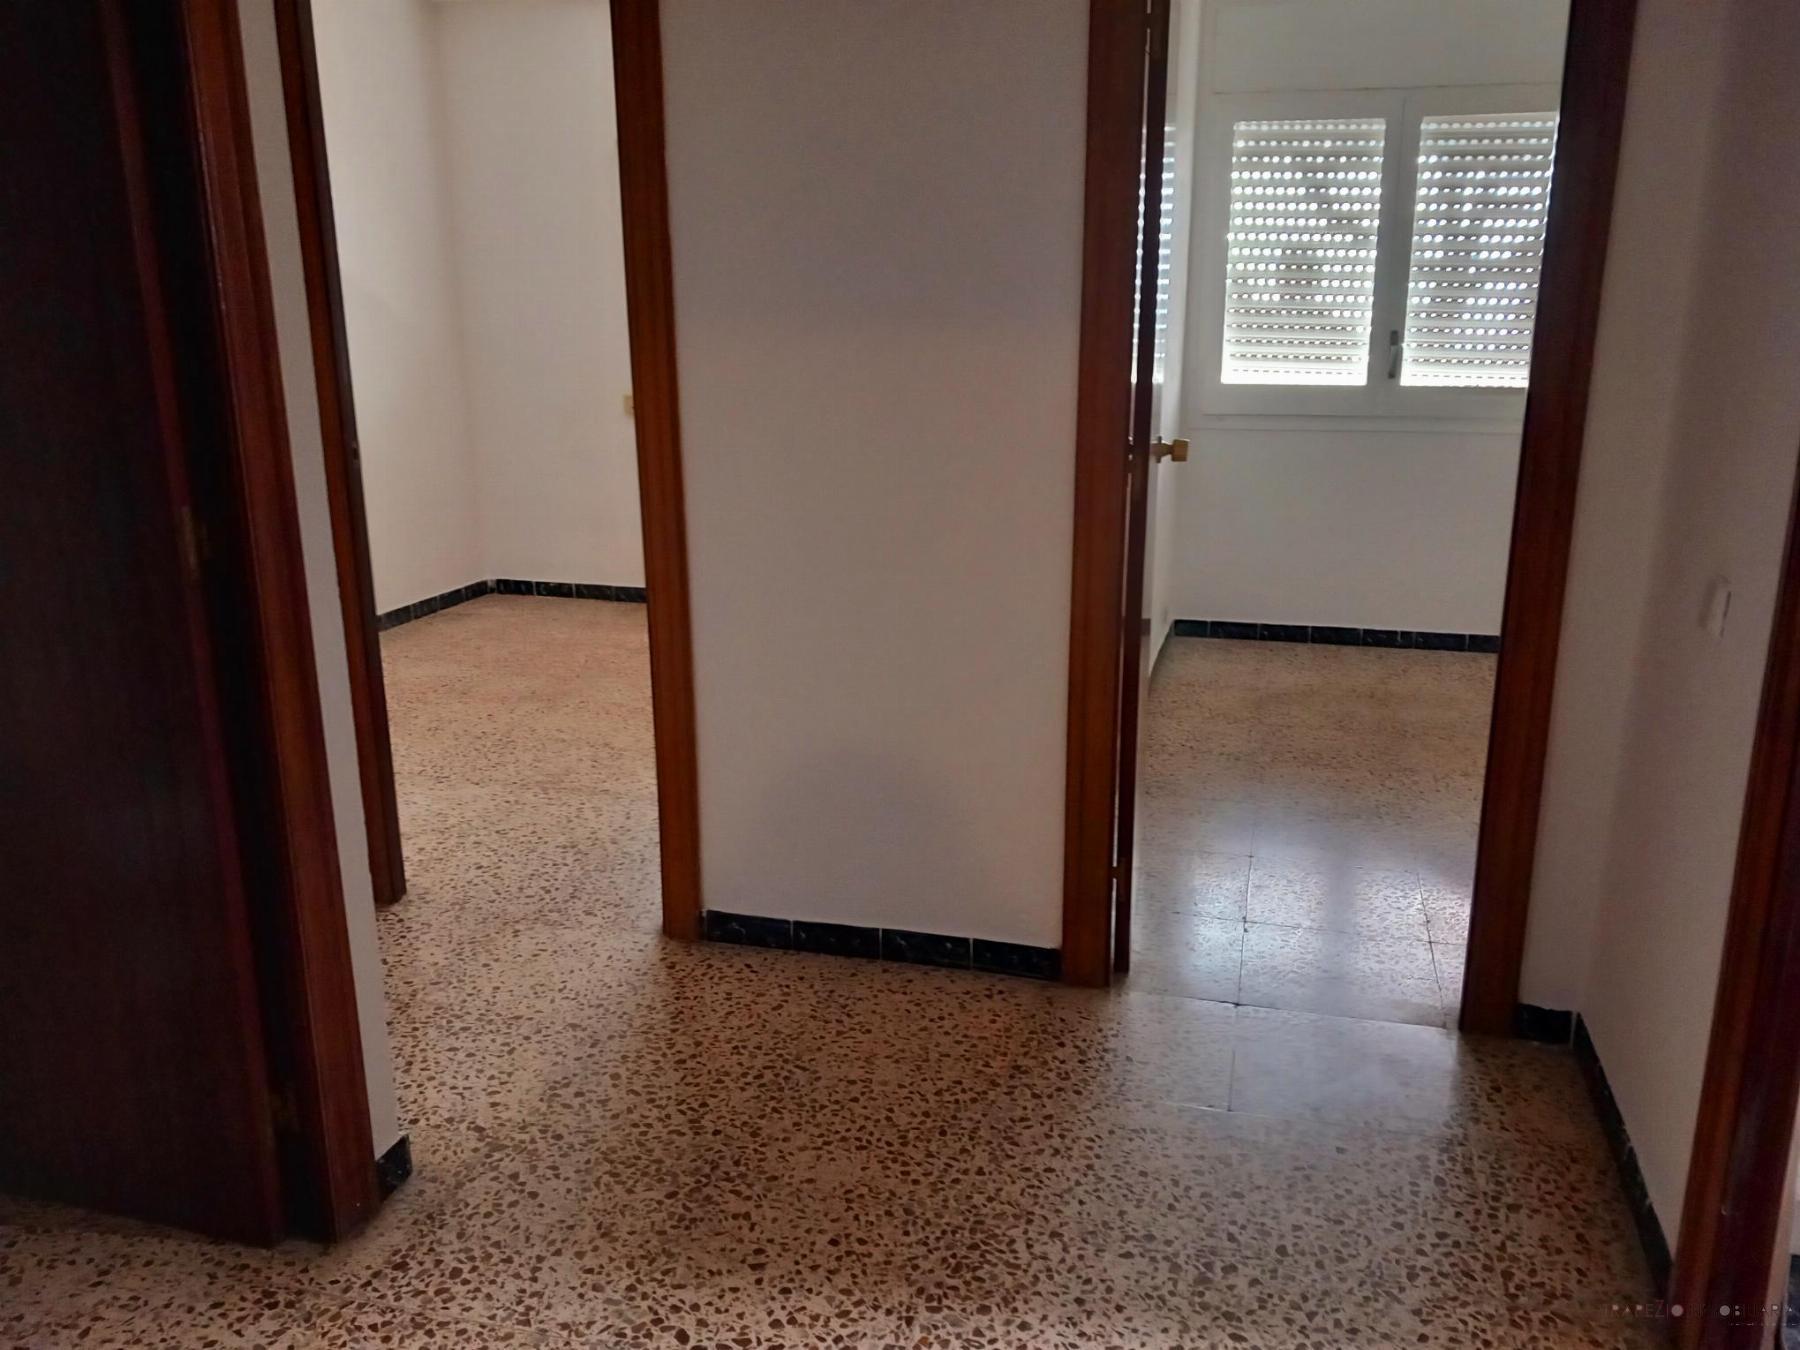 For rent of flat in Sant Andreu de Llavaneres